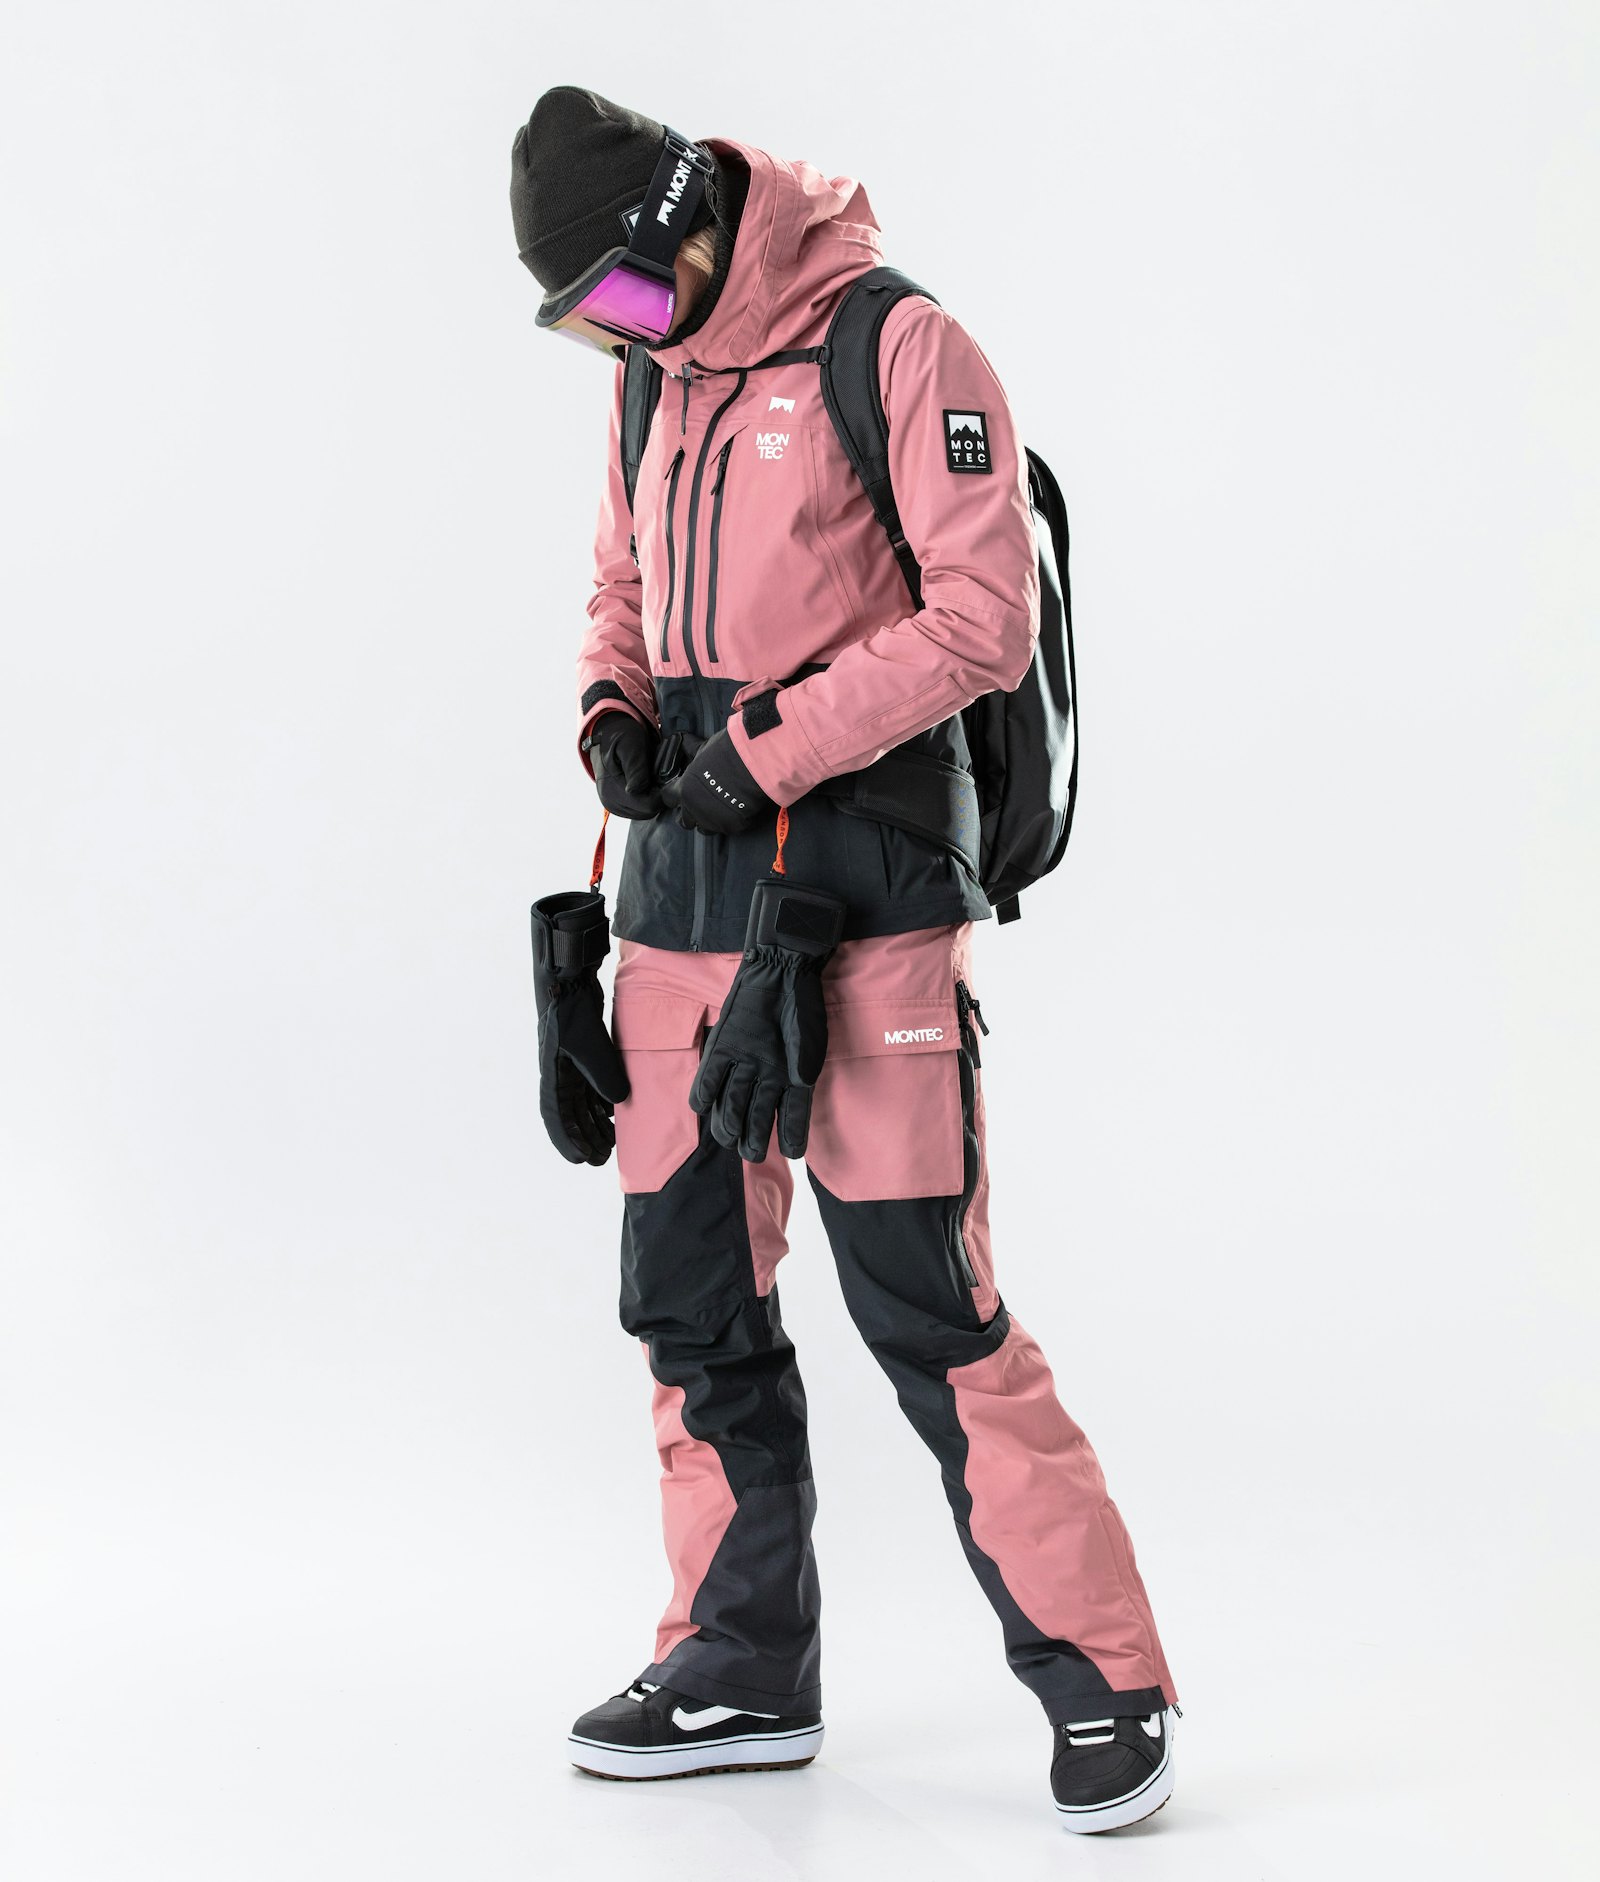 Moss W 2020 Snowboardjacke Damen Pink/Black